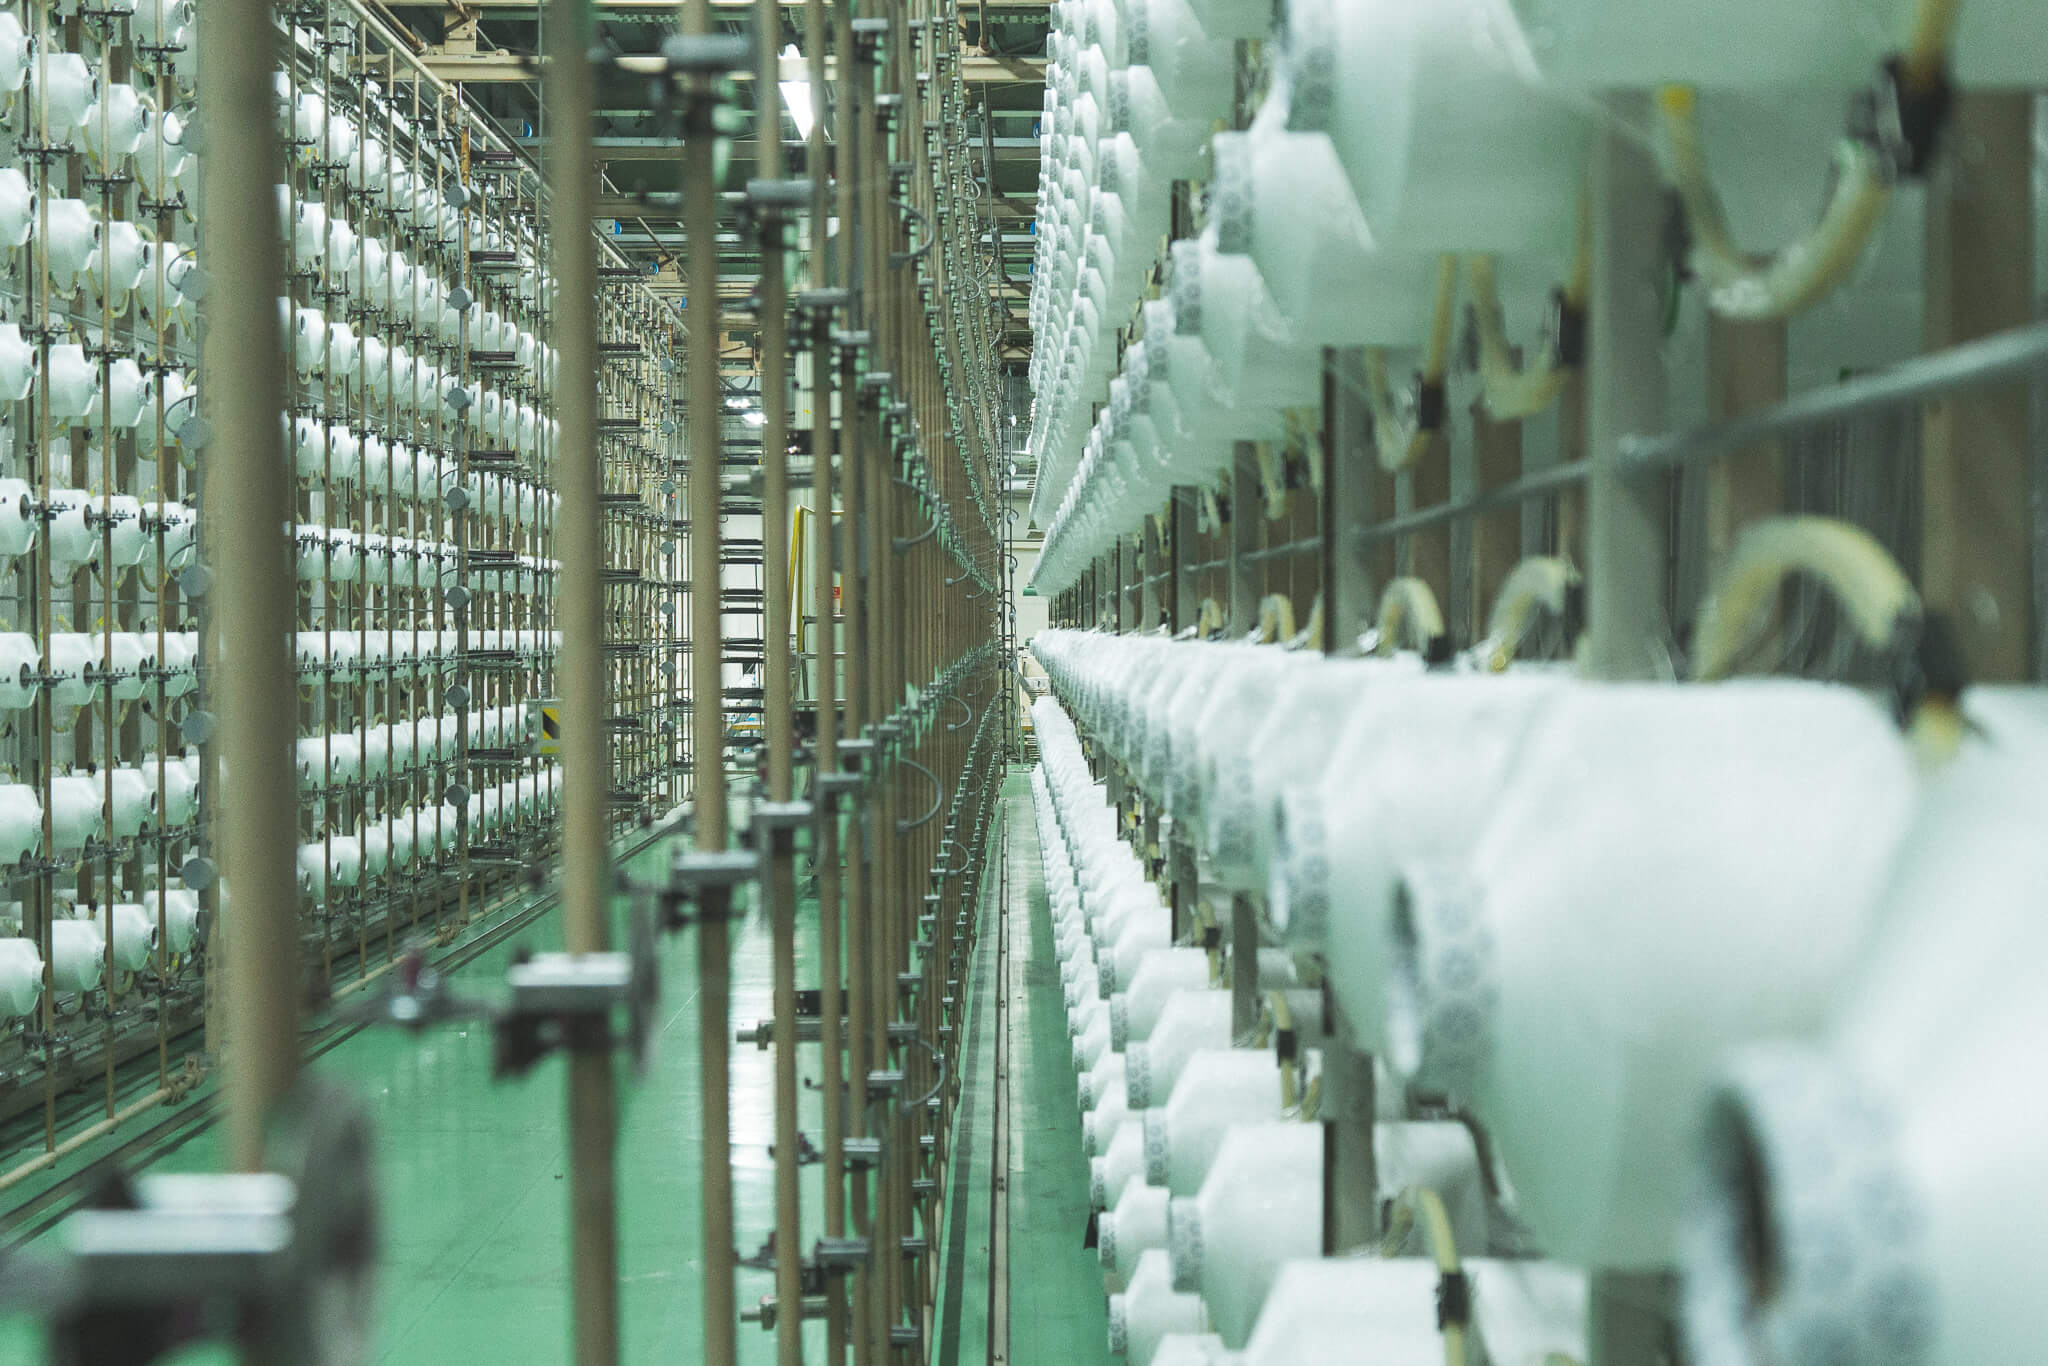 データで管理され、ほとんど人がいない工場で何千もの糸が整列され、織り機まで伸びる